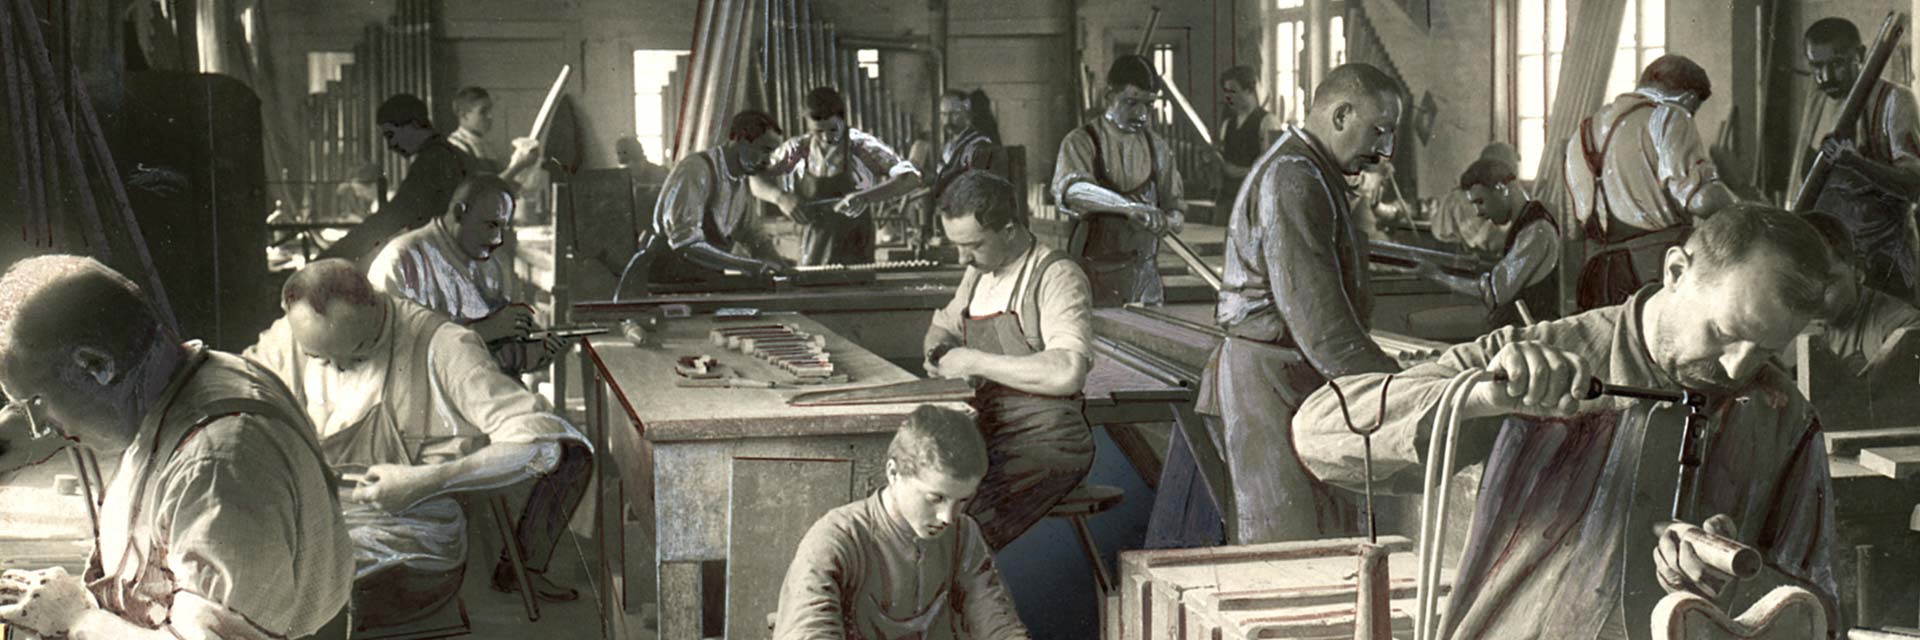 Pfeifenwerkstatt Ludwigsburg etwa 1905